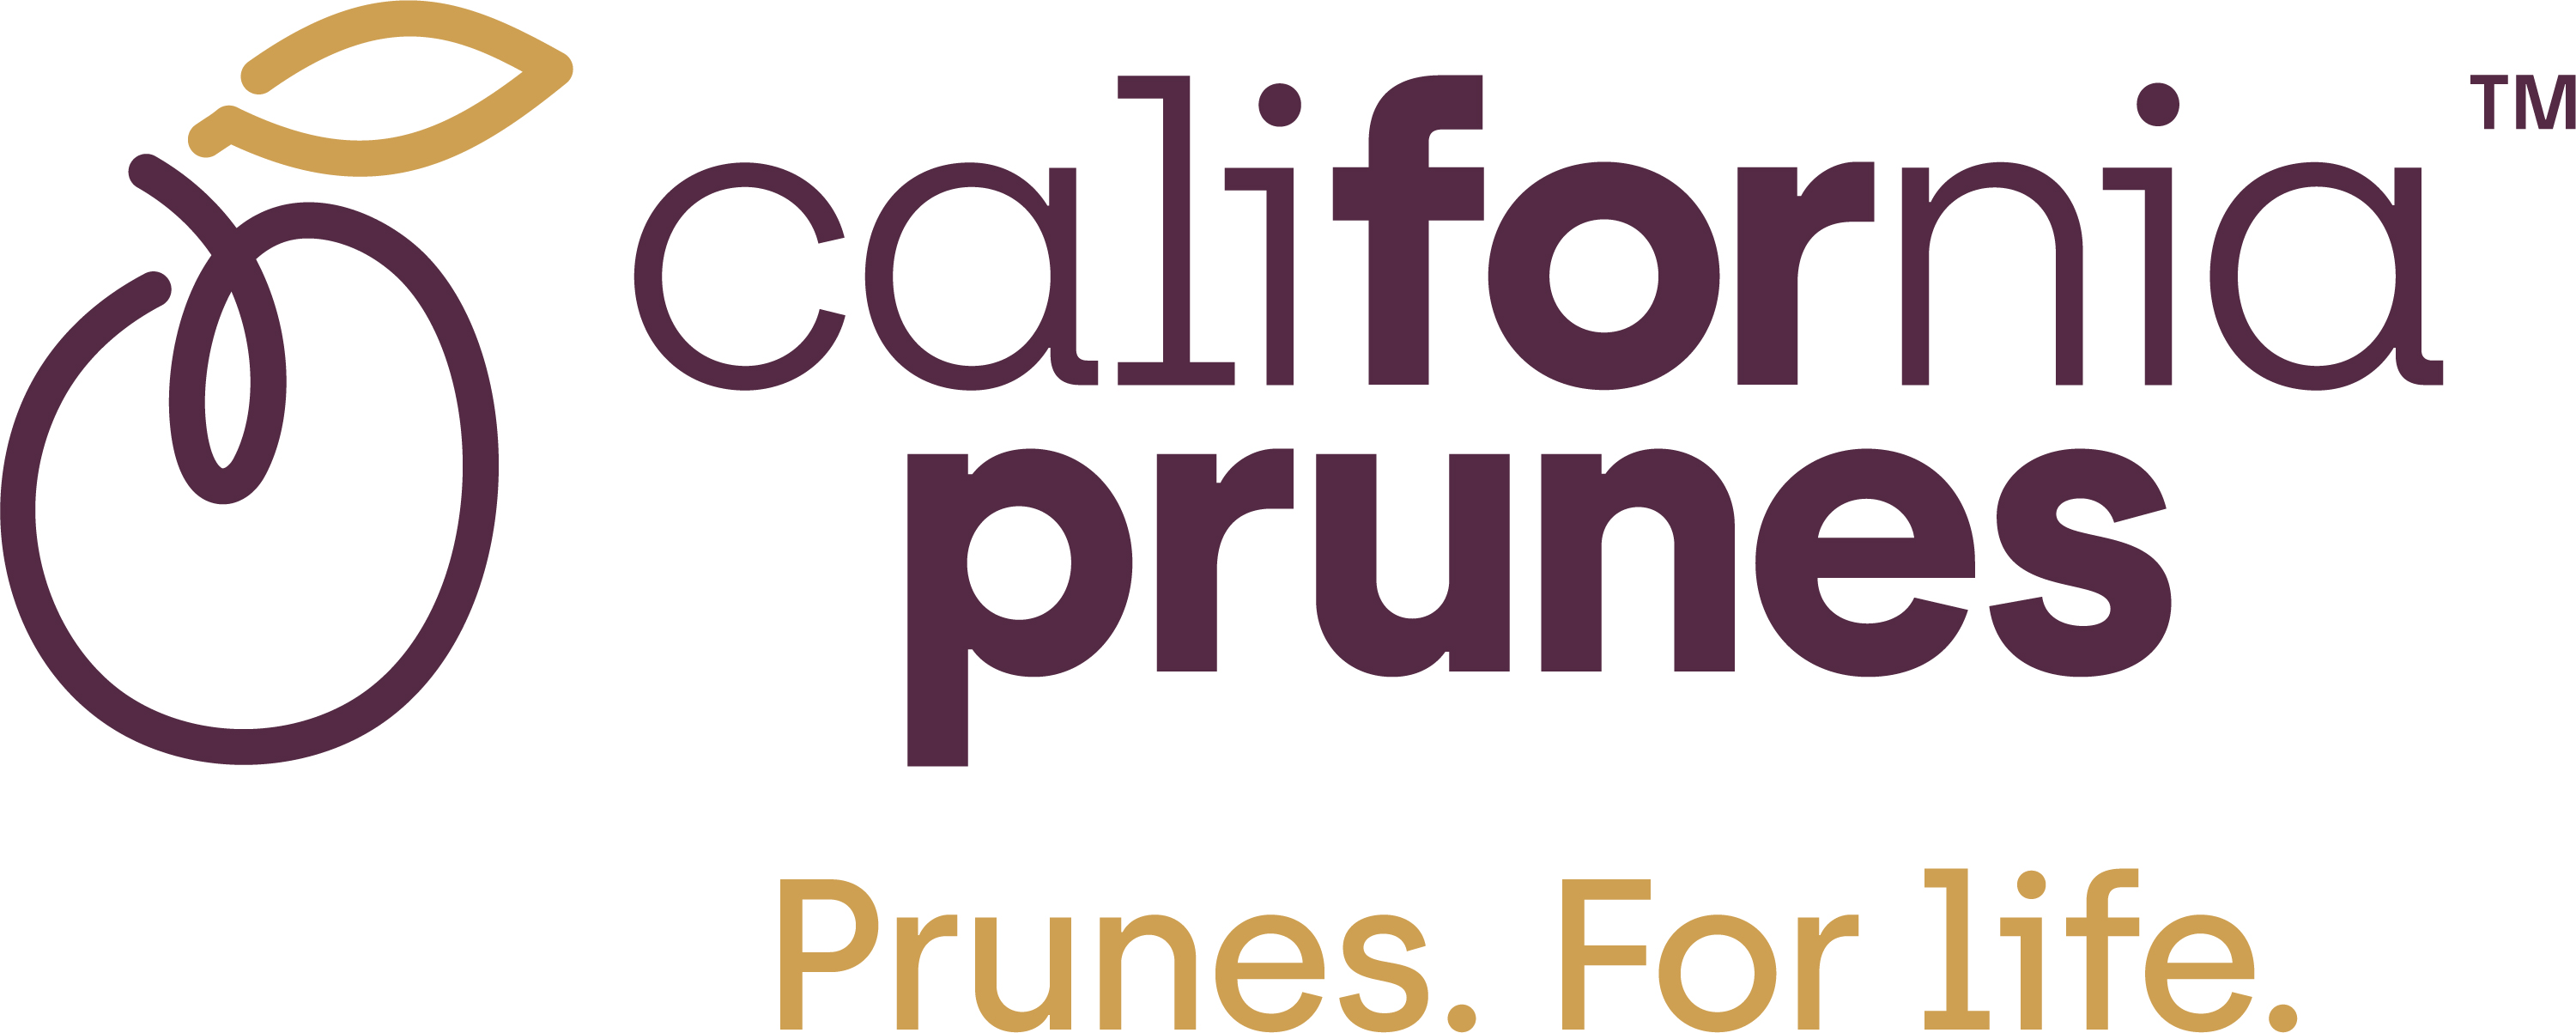 California Prunes